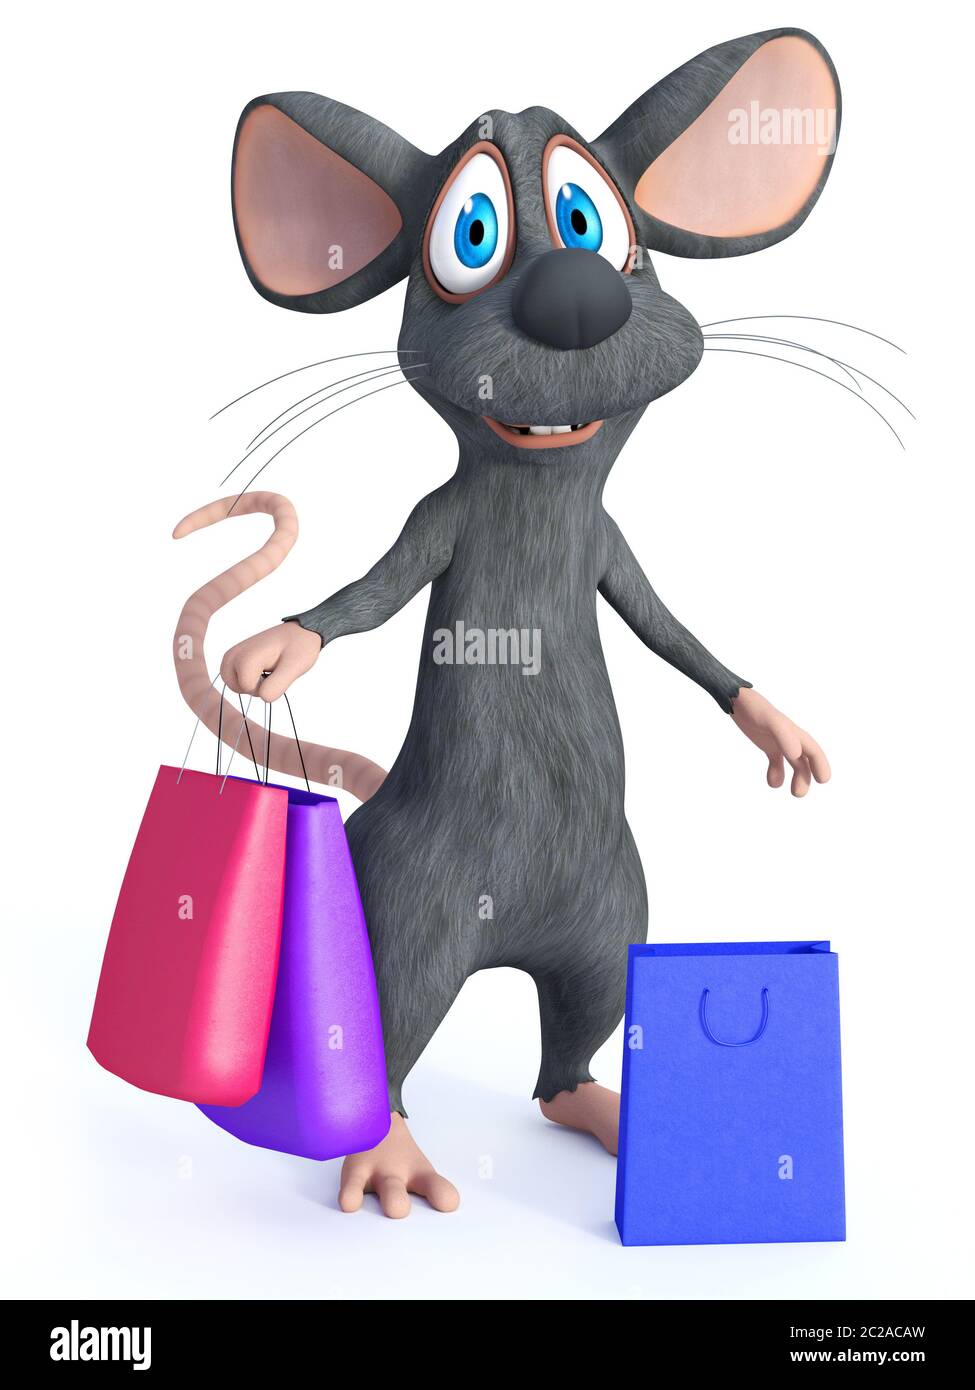 3D-Rendering von einem netten Lächeln cartoon Maus stehend und mit zwei Einkaufstaschen in der Hand. Eine weitere Shopping Bag ist auf dem Boden neben ihm. Whi Stockfoto